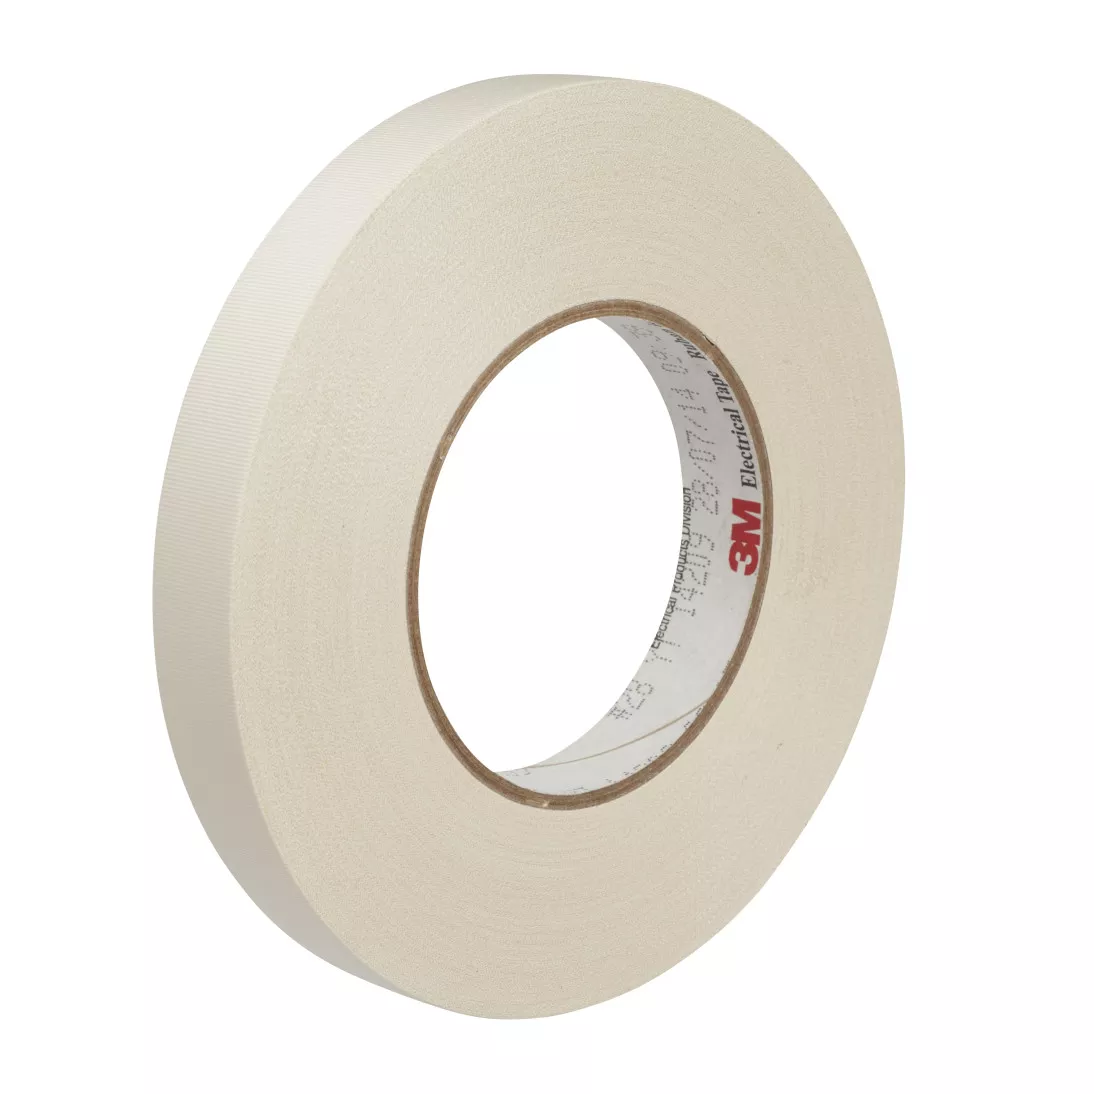 3M™ Acetate Cloth Electrical Tape 28, 2 in x 72 yd, 3 in Paper Core, 20
Rolls/Case